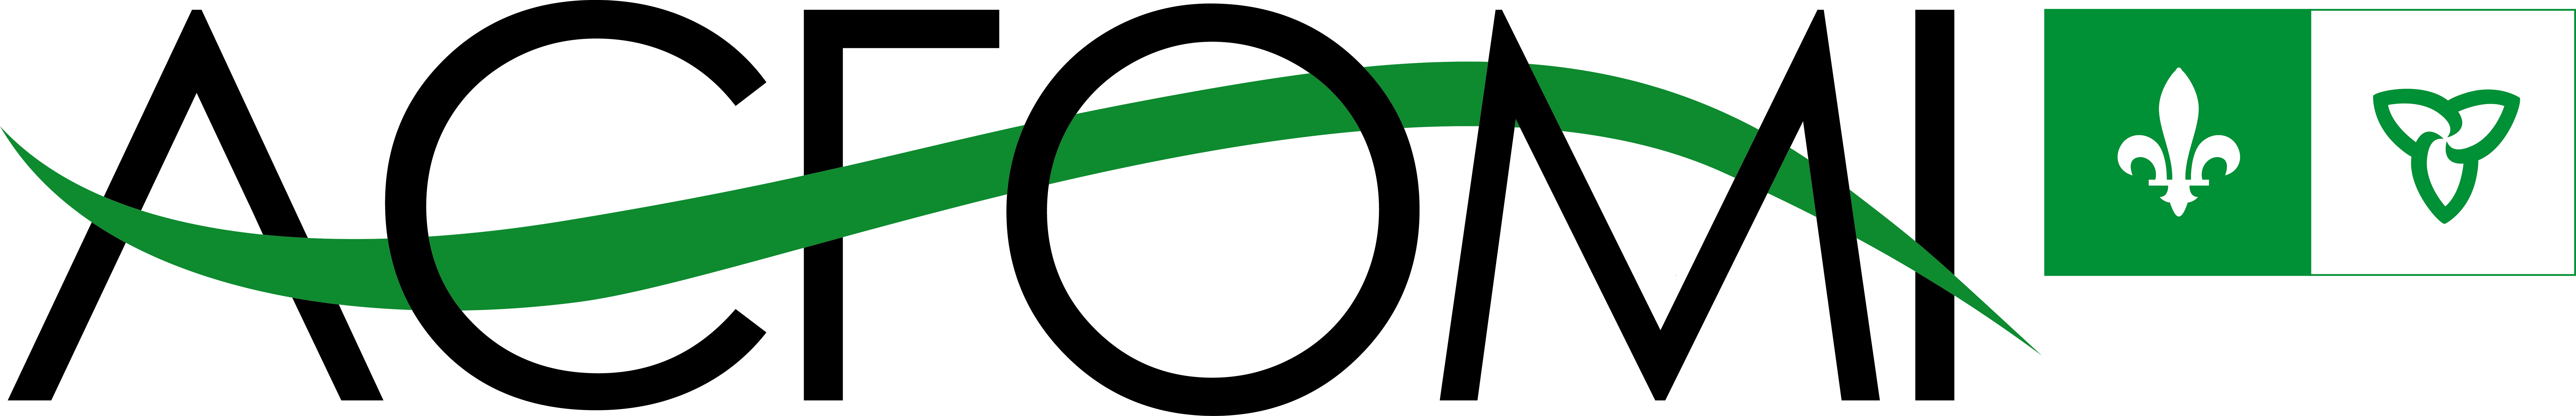 ACFOMI-logo2